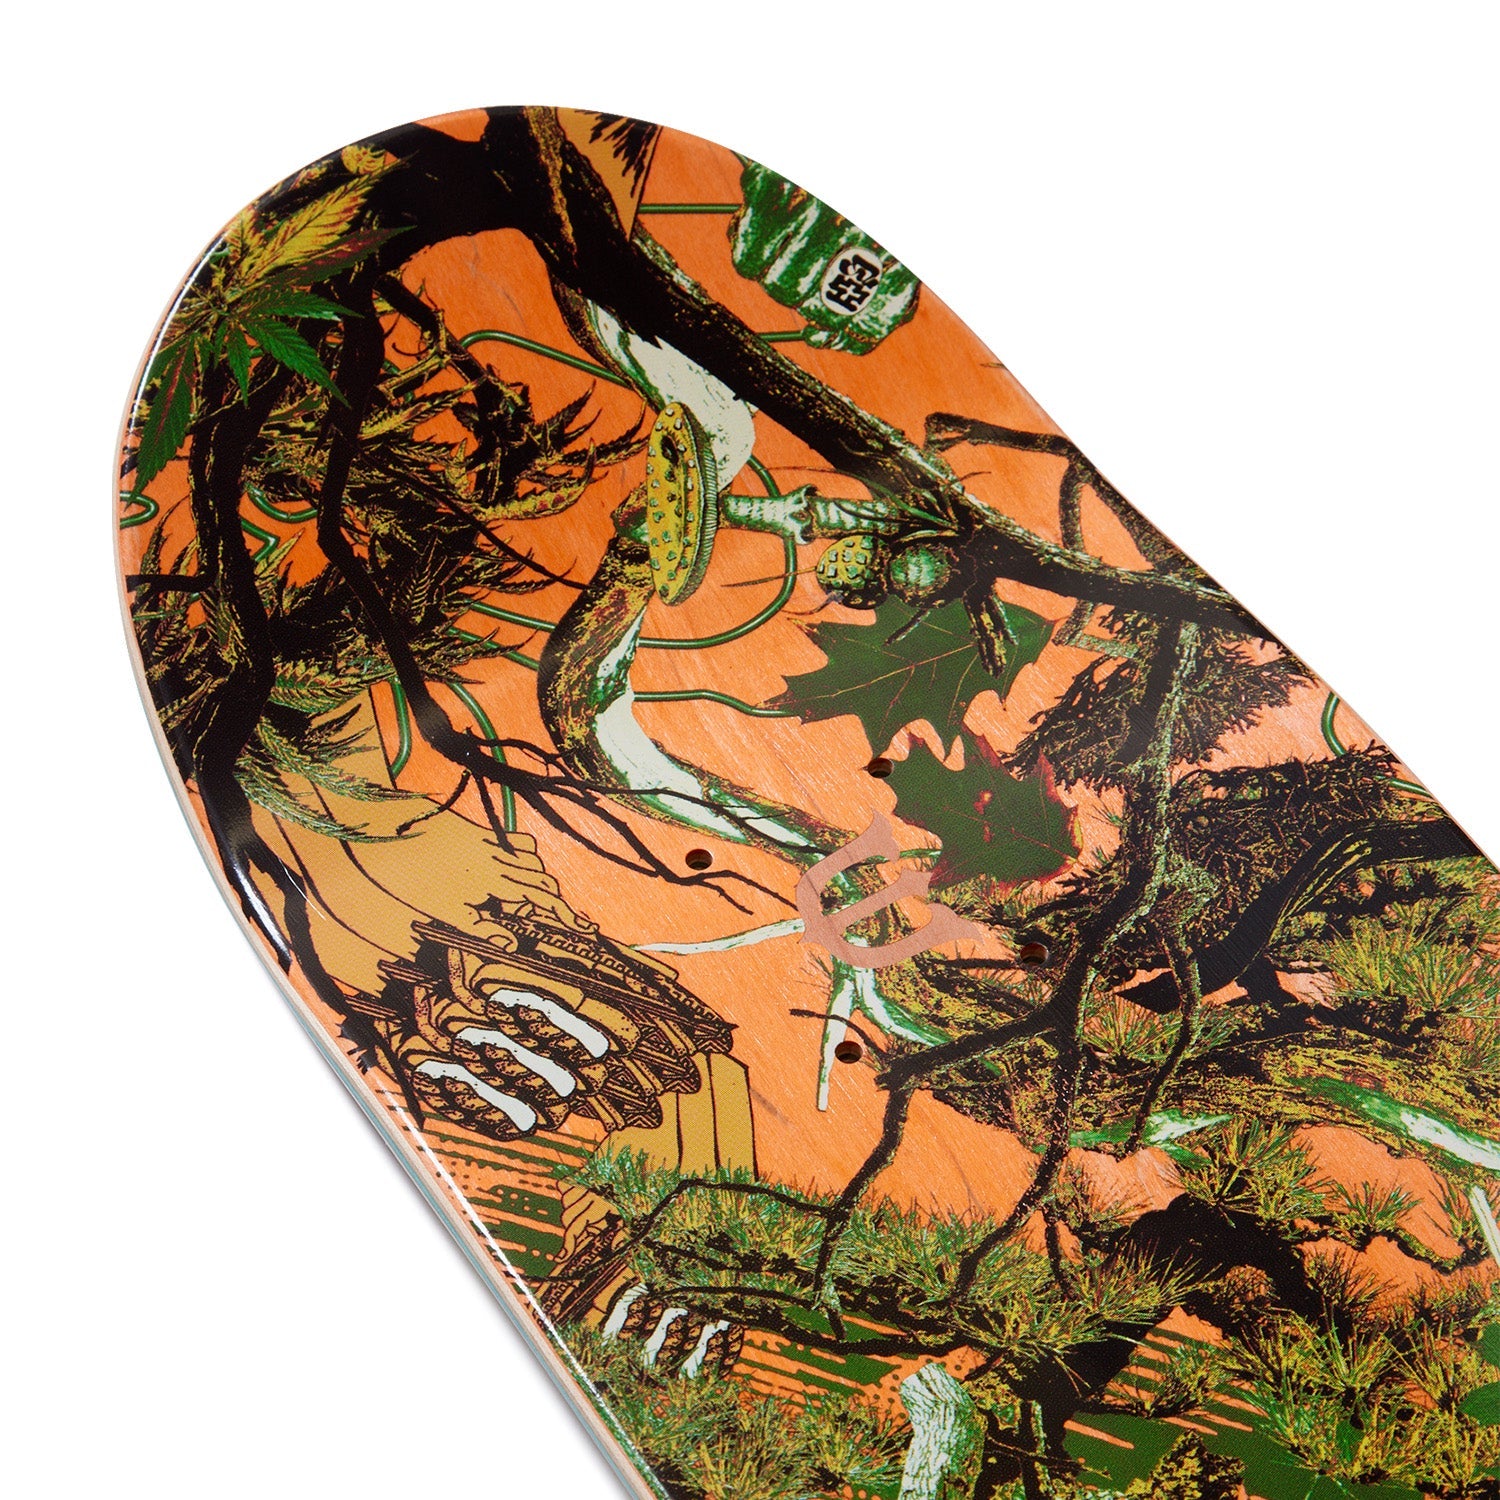 【8.0】Evisen Skateboards - Tree Camo